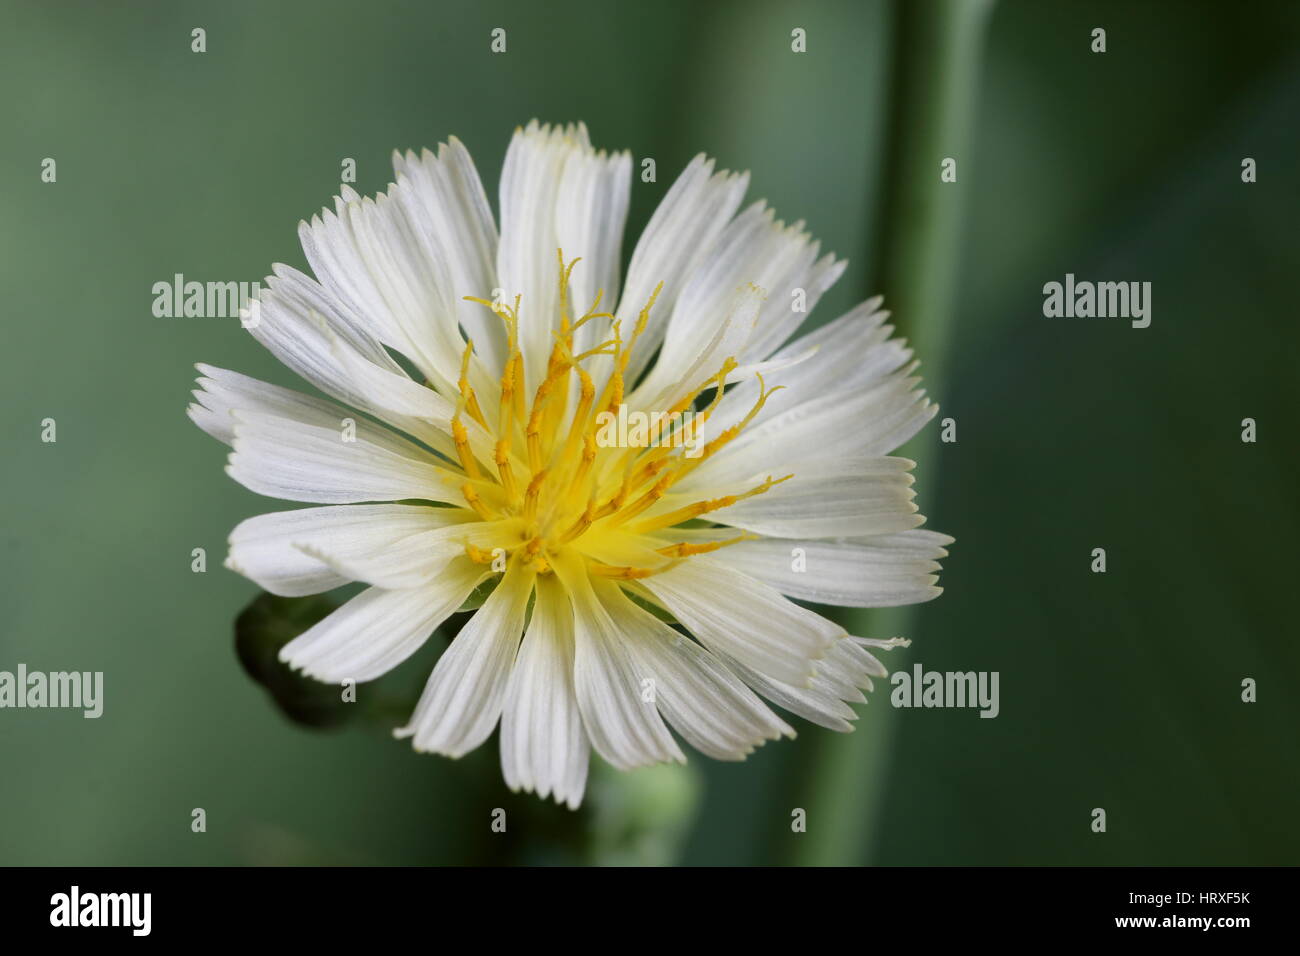 Blume des indischen Salat oder Lactuca Indica, eine angenehme Verkostung Blattgemüse. Stockfoto